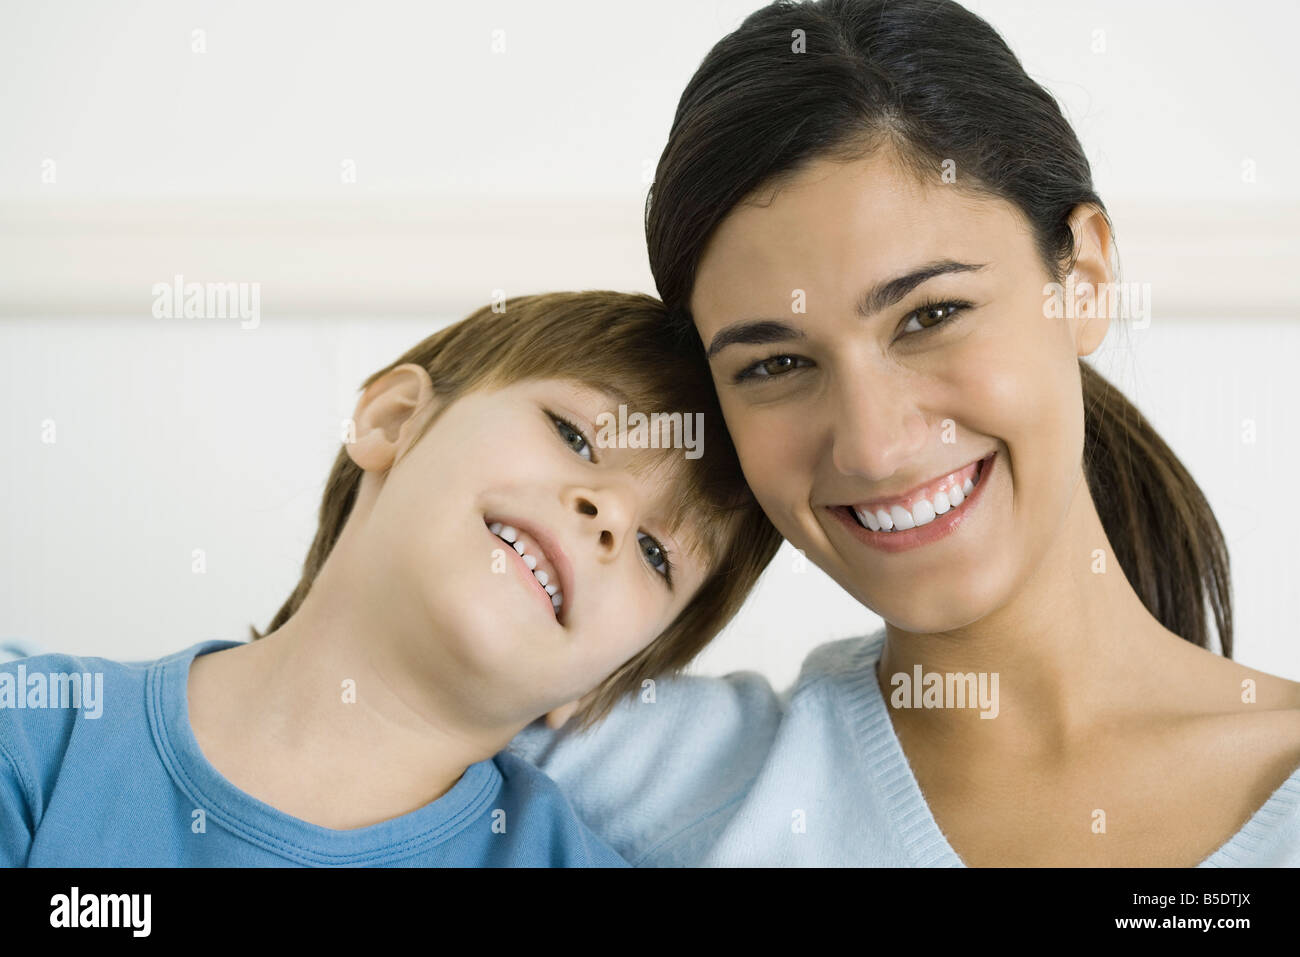 Kleiner Junge lehnte seinen Kopf auf die Schulter seiner Mutter, beide Lächeln, Porträt Stockfoto